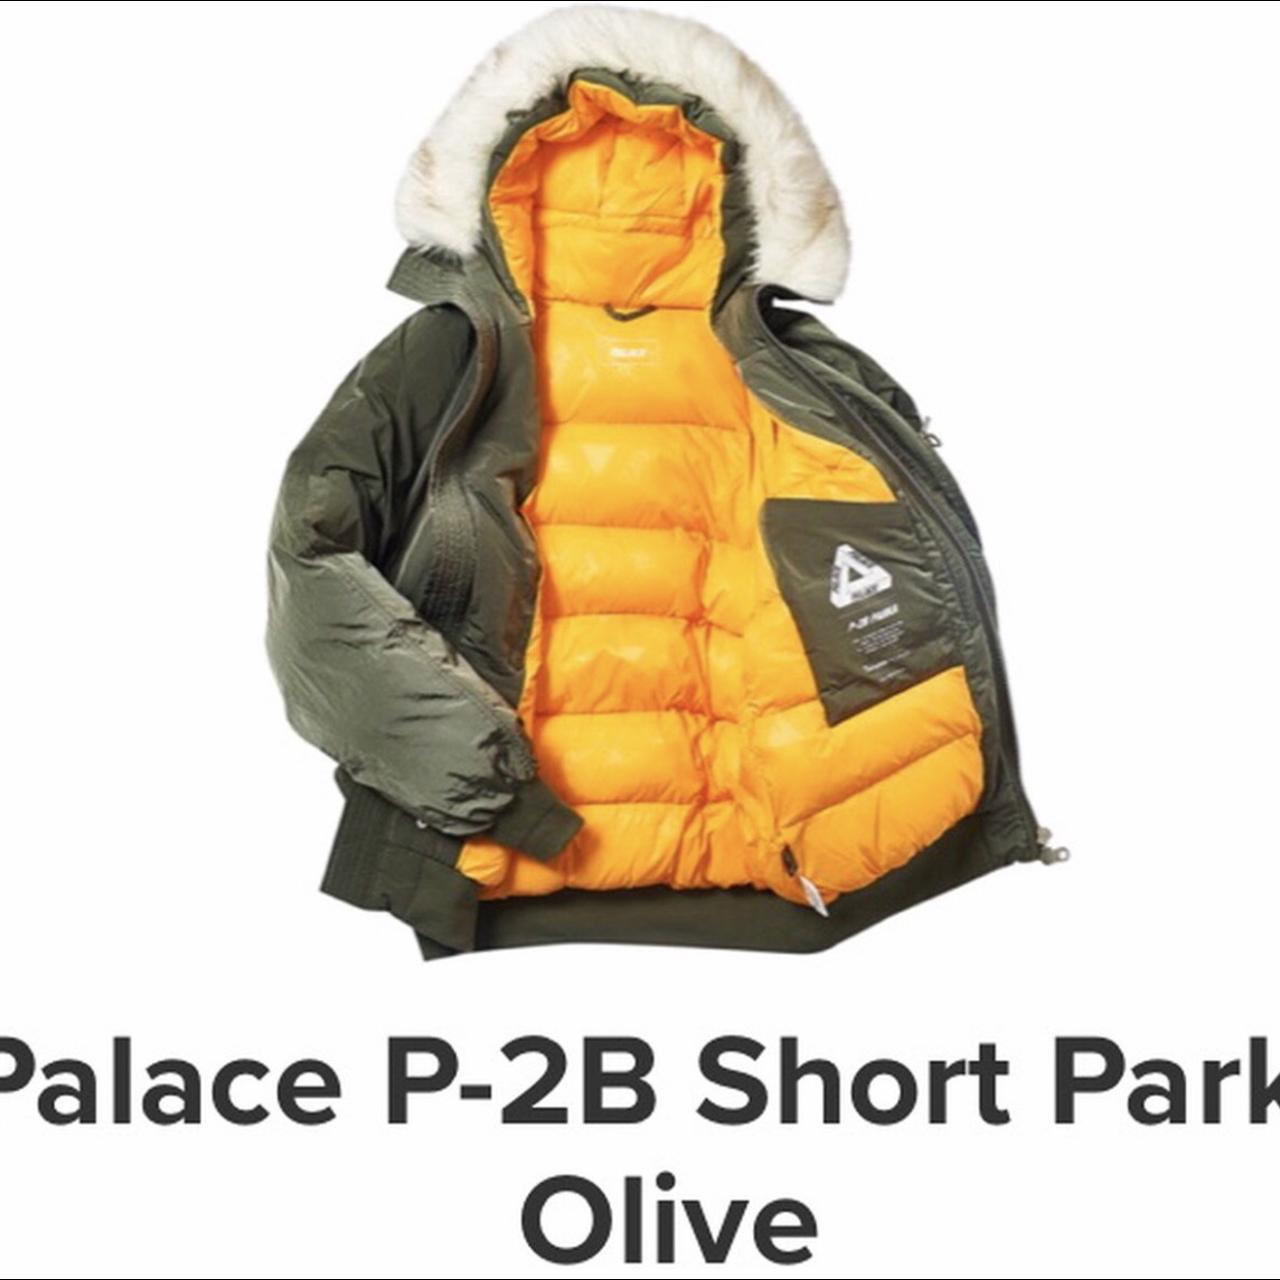 Palace coat, Palace P-2B Short parka olive, 10/10